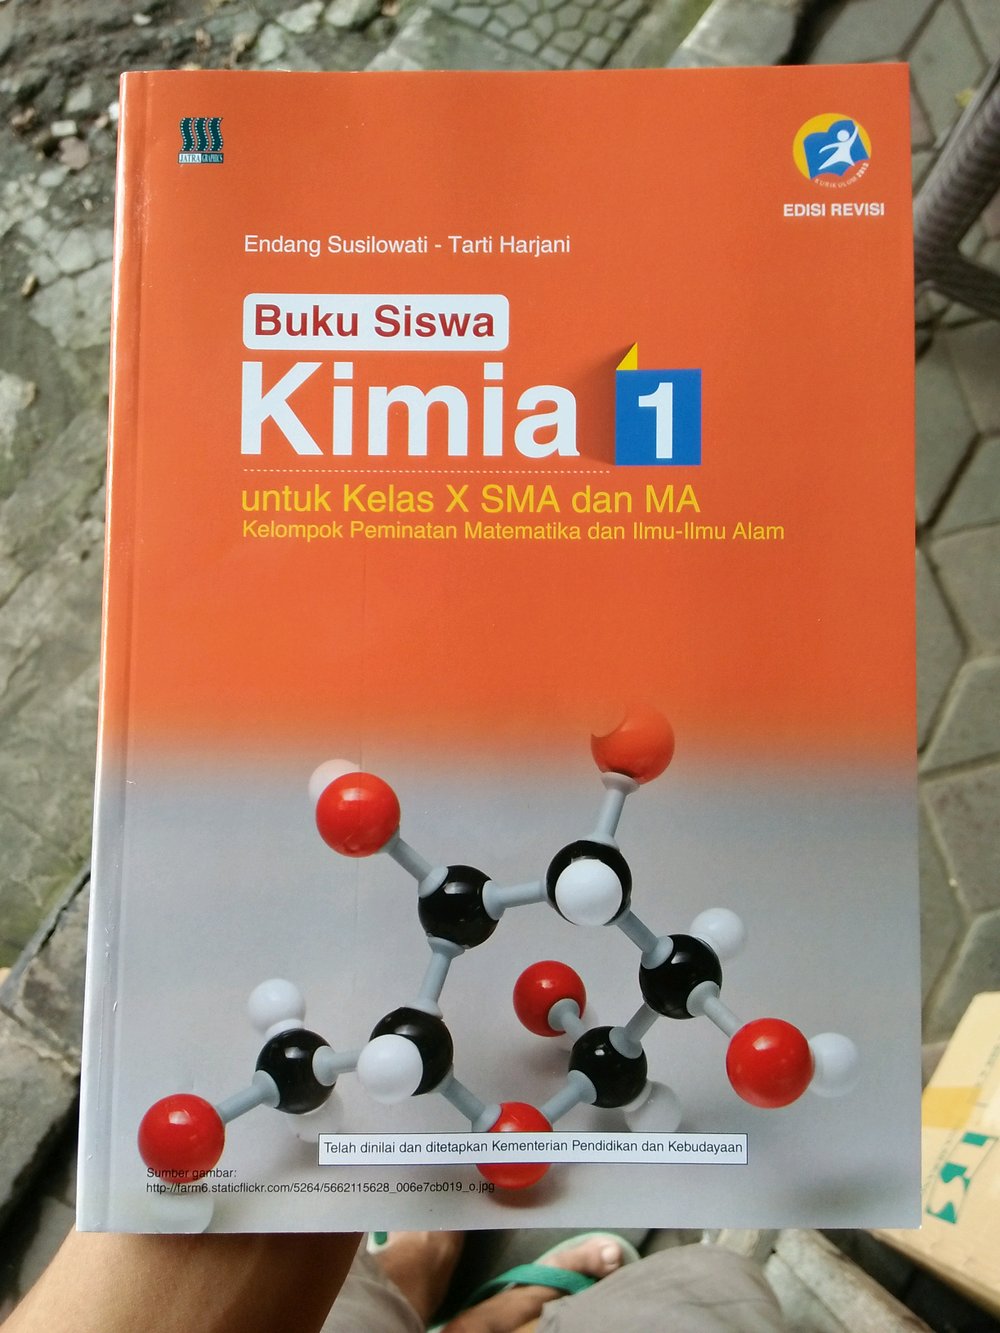 Buku Paket Kimia Kelas X Smk Kurikulum 13 - lopasairport